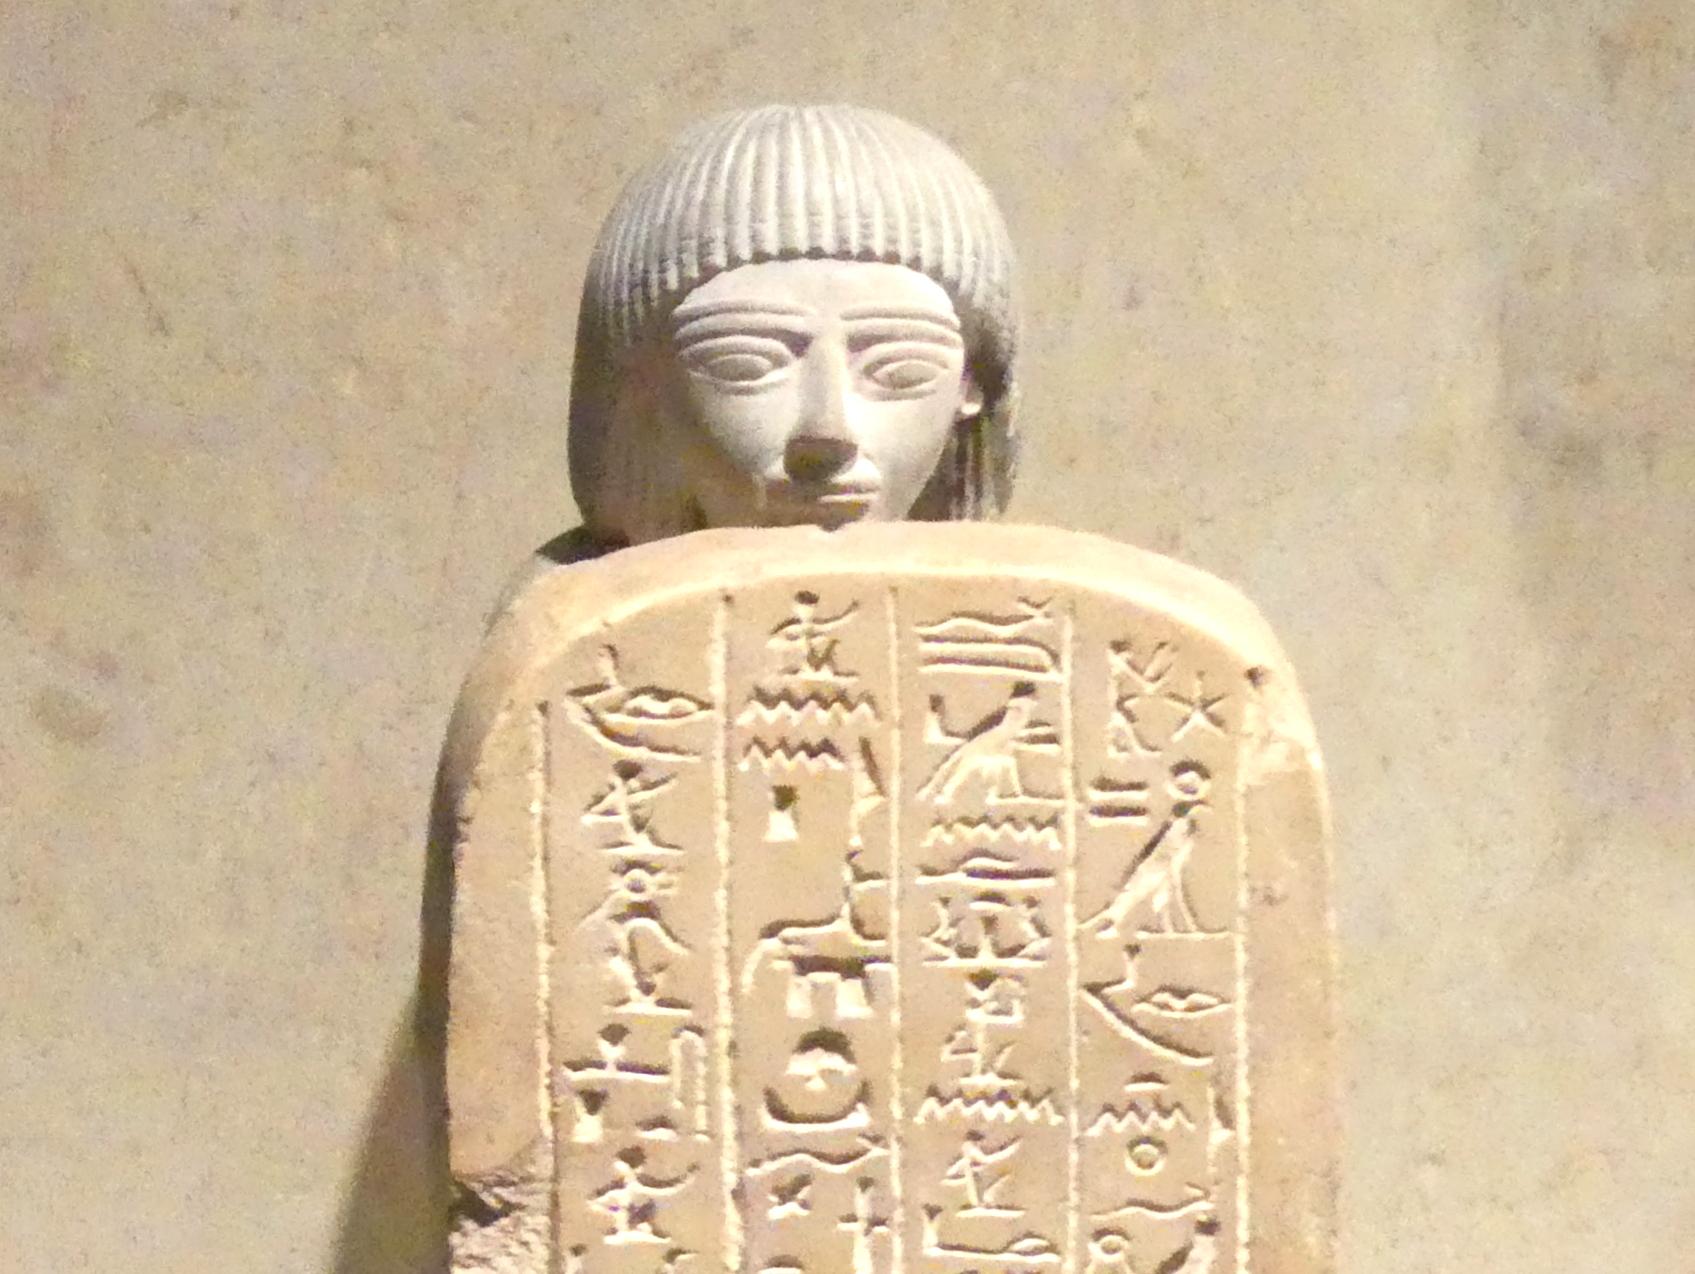 Stelophor (Stelenträger) des Nehi, 18. Dynastie, Undatiert, 1350 v. Chr.